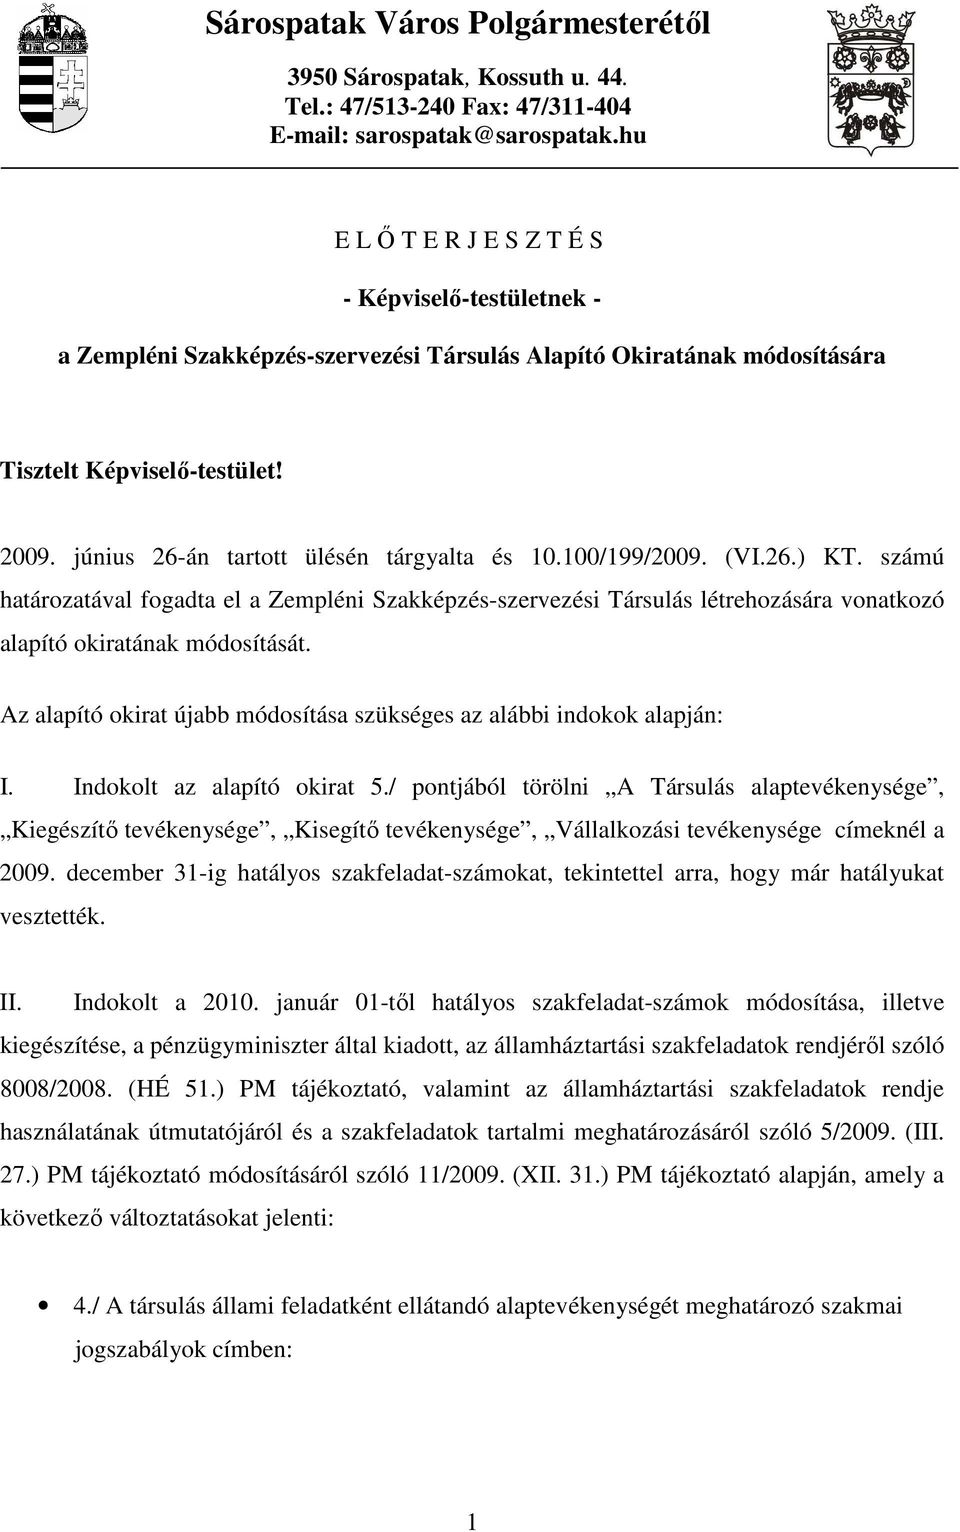 100/199/2009. (VI.26.) KT. számú határozatával fogadta el a Zempléni Szakképzés-szervezési Társulás létrehozására vonatkozó alapító okiratának módosítását.